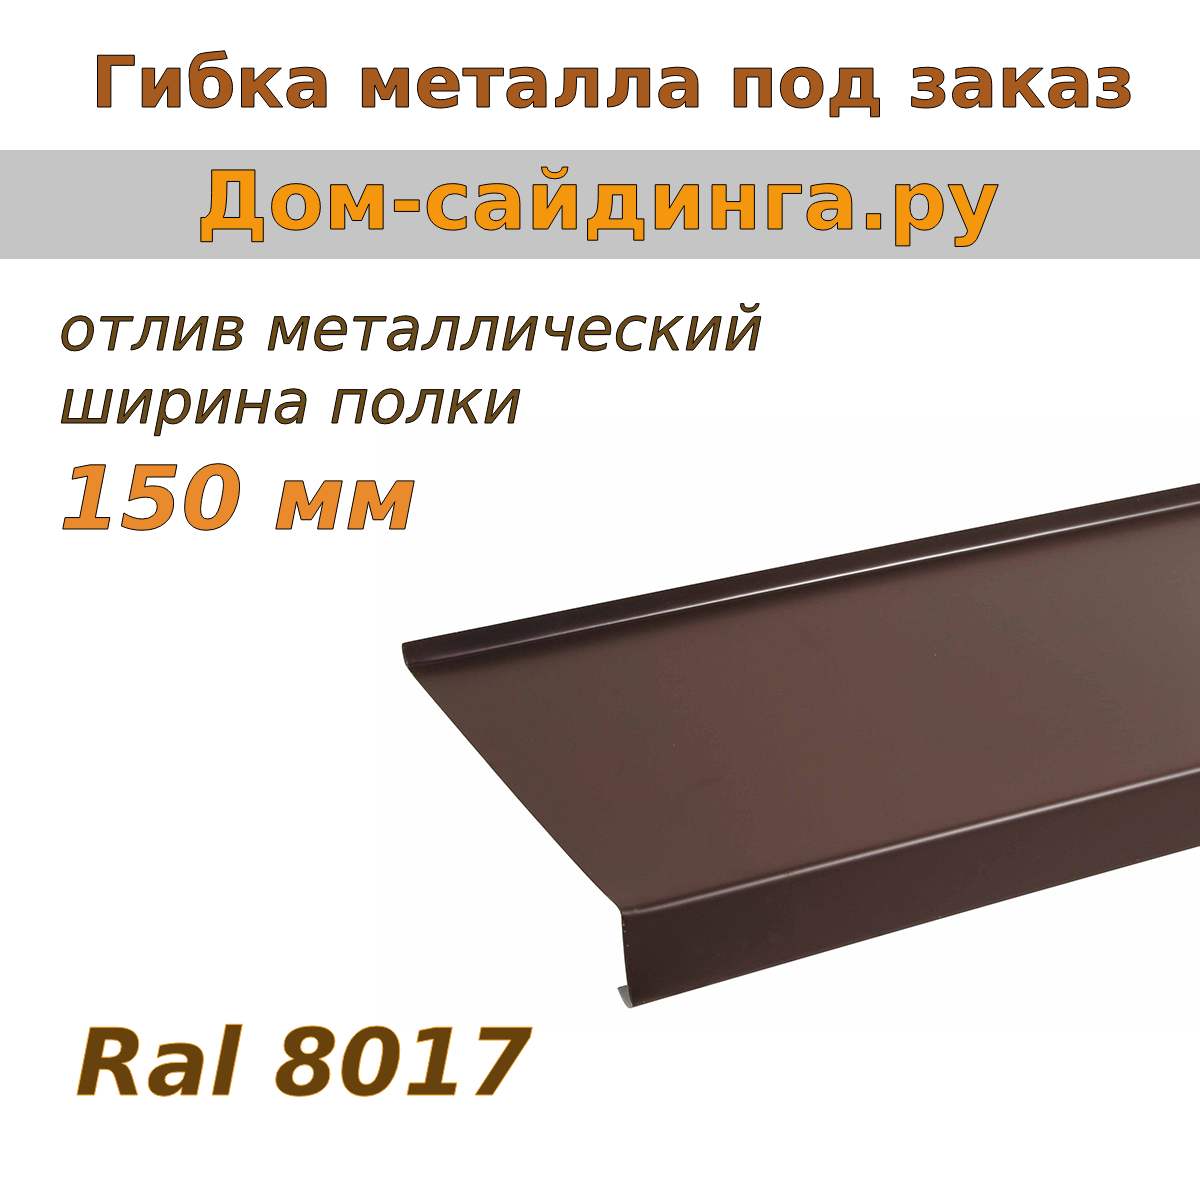 Отлив металлический Ral 8017 (коричневый), 150 мм